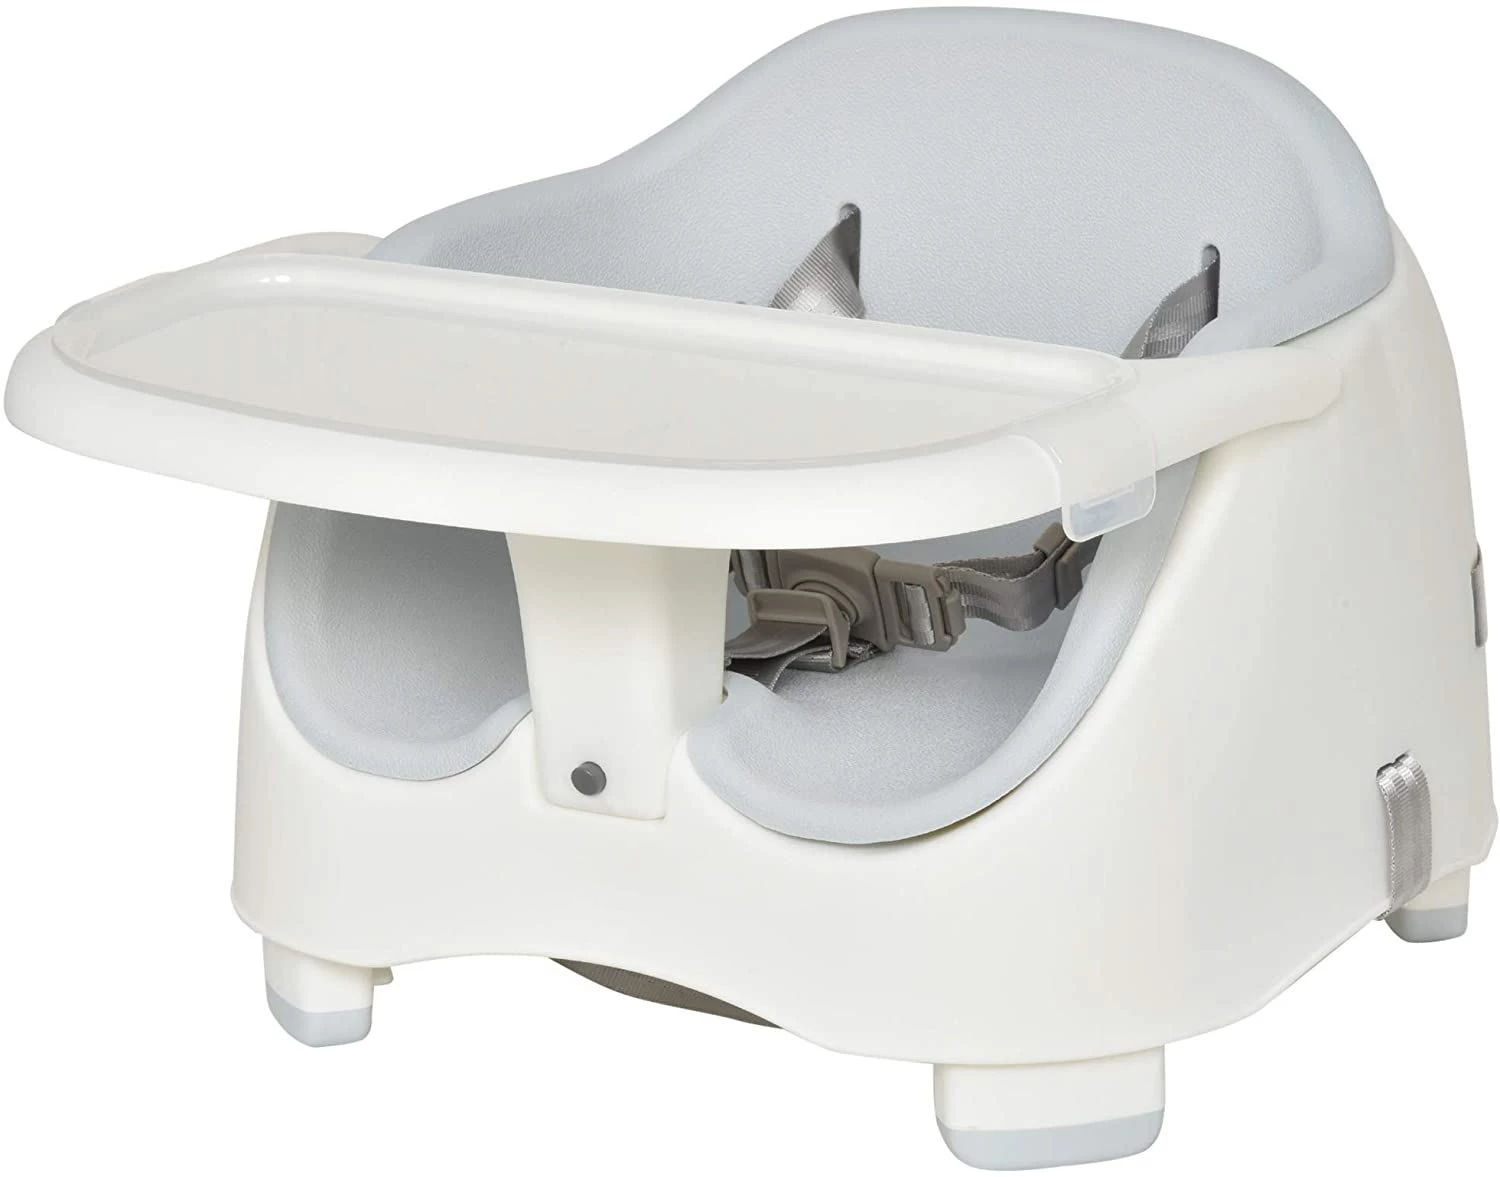 Κίνα Finehope Toddler Dine Chairs Seating Plastic Booster Dining Table  1/6 Portable Seats Bumbo Floor Infant Sit Up Chair Me Baby Seat - COPY - qt5spw κατασκευαστής